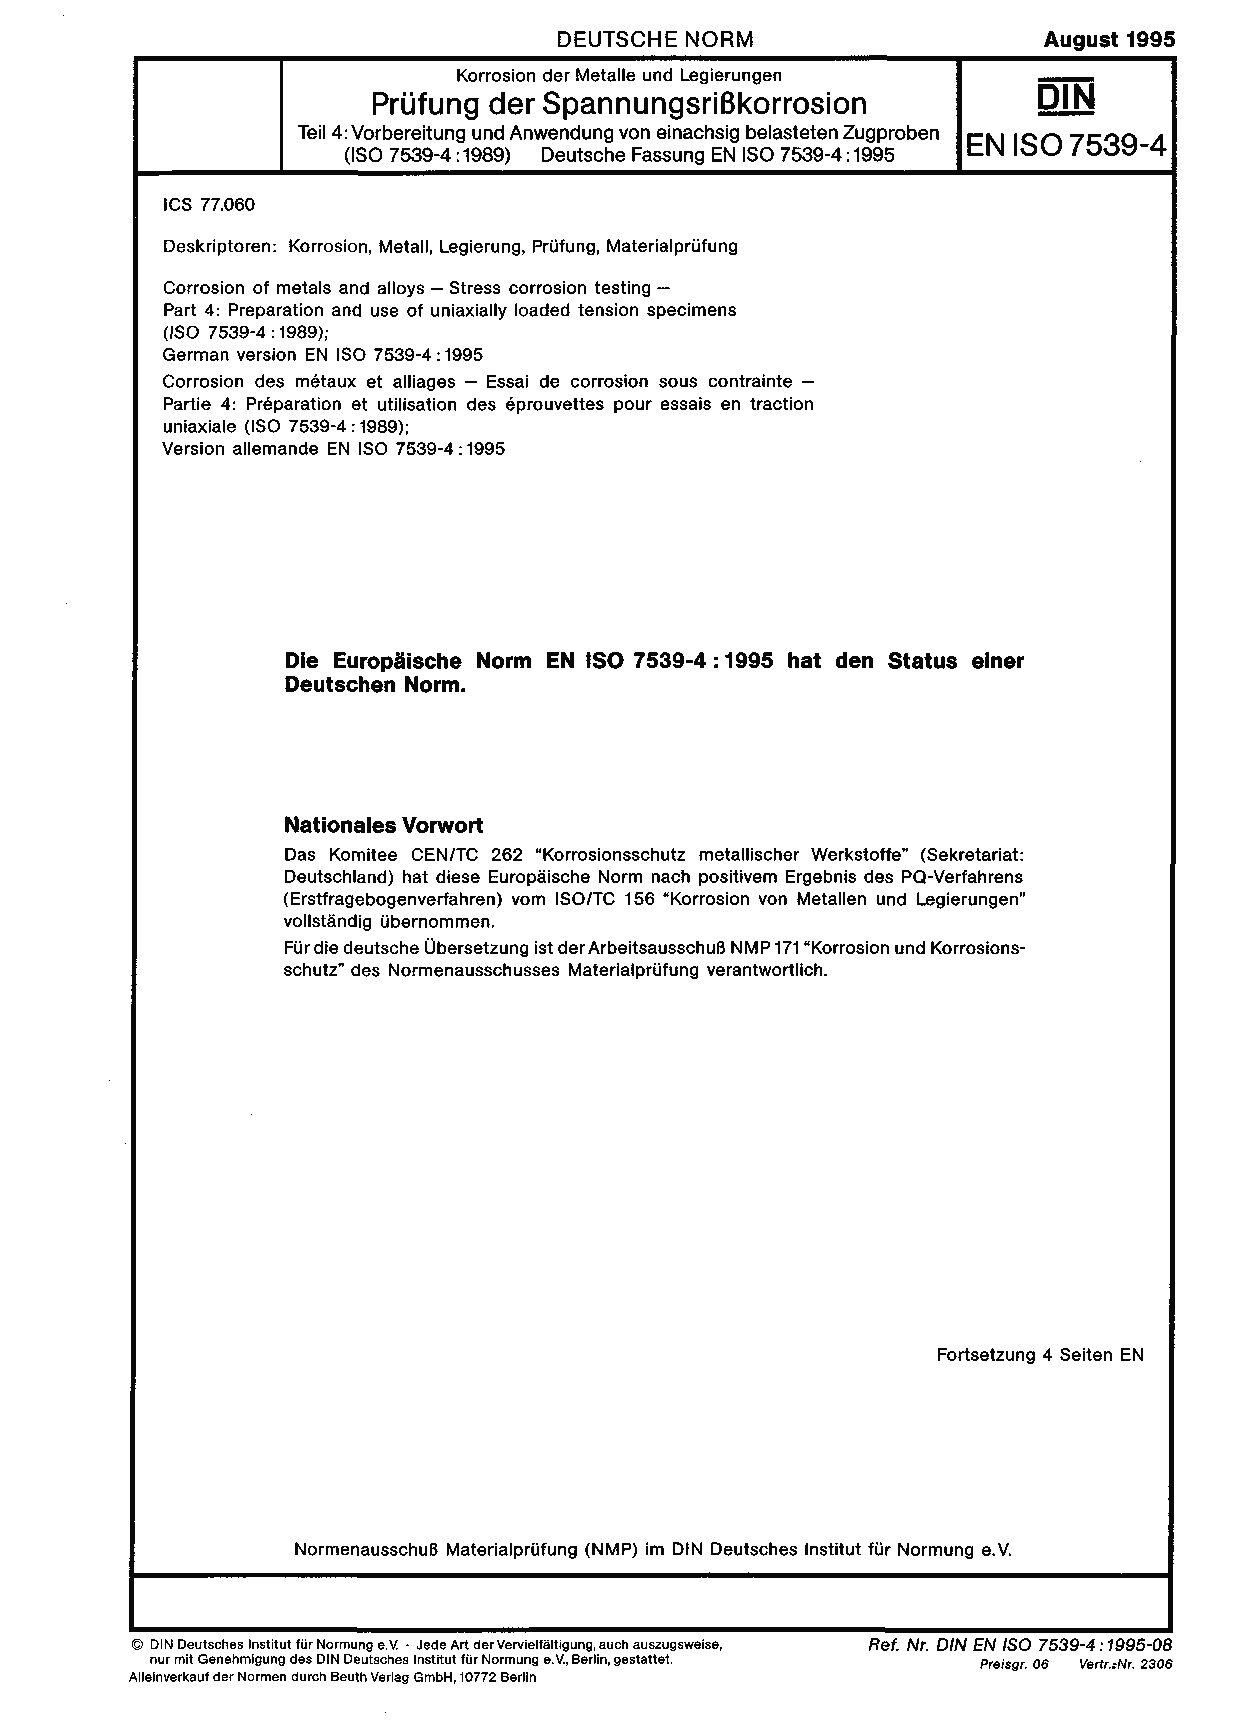 DIN EN ISO 7539-4:1995封面图